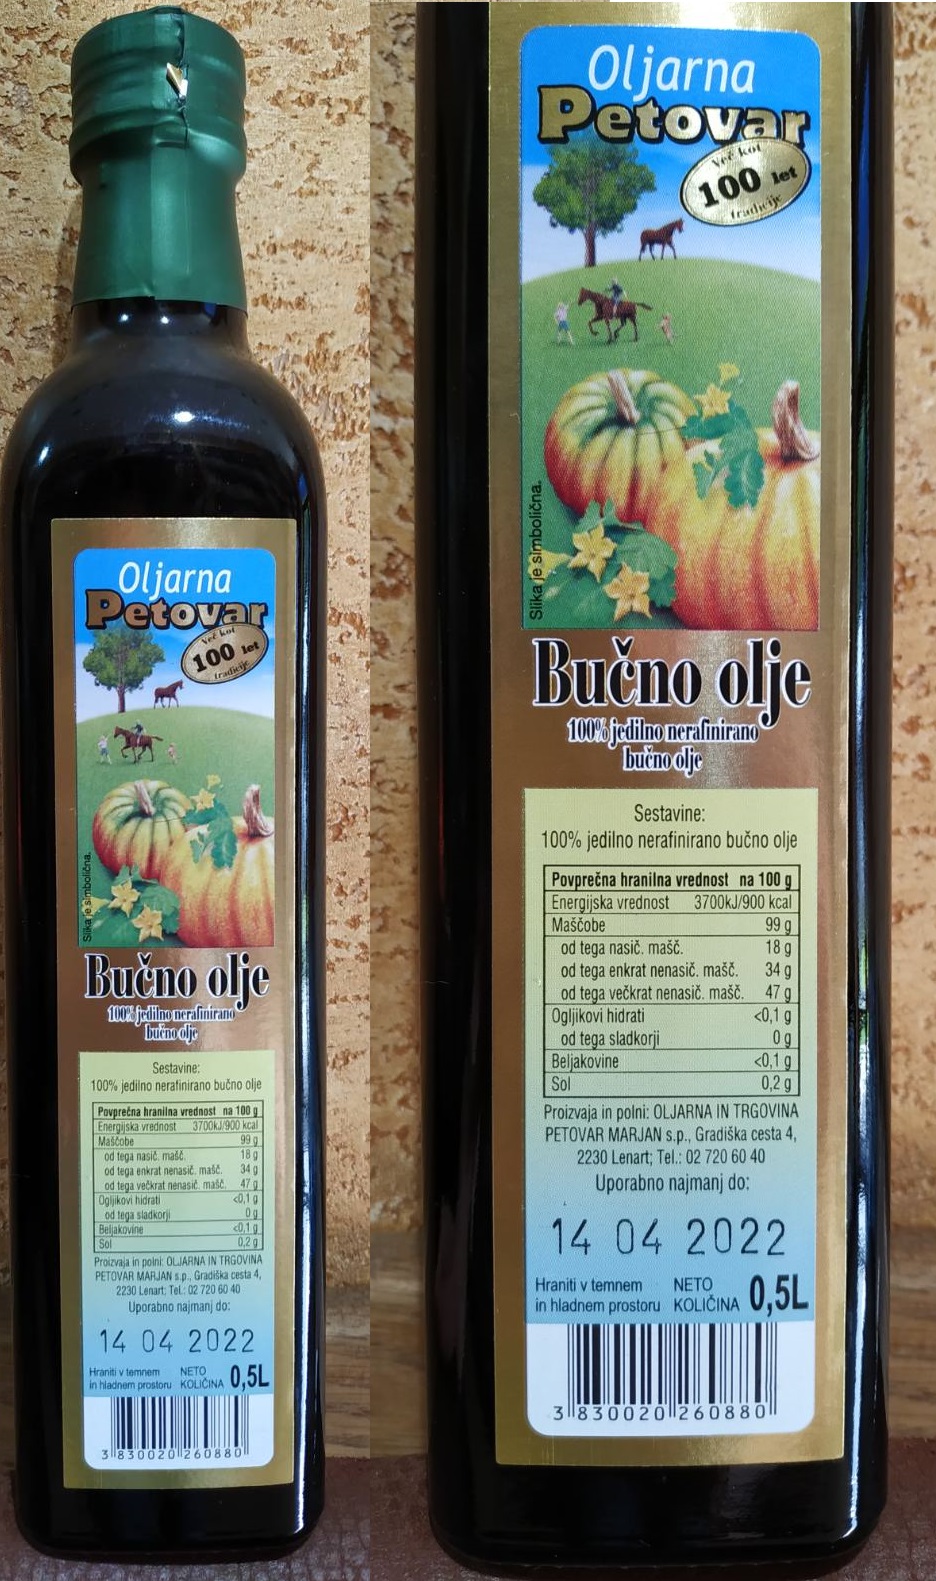 Масло тыквы 500 мл Словения Bucno olje витамины ЦИНК 100% тыквенное масло нерафинированное первый холодный отжим Oljarna petovar